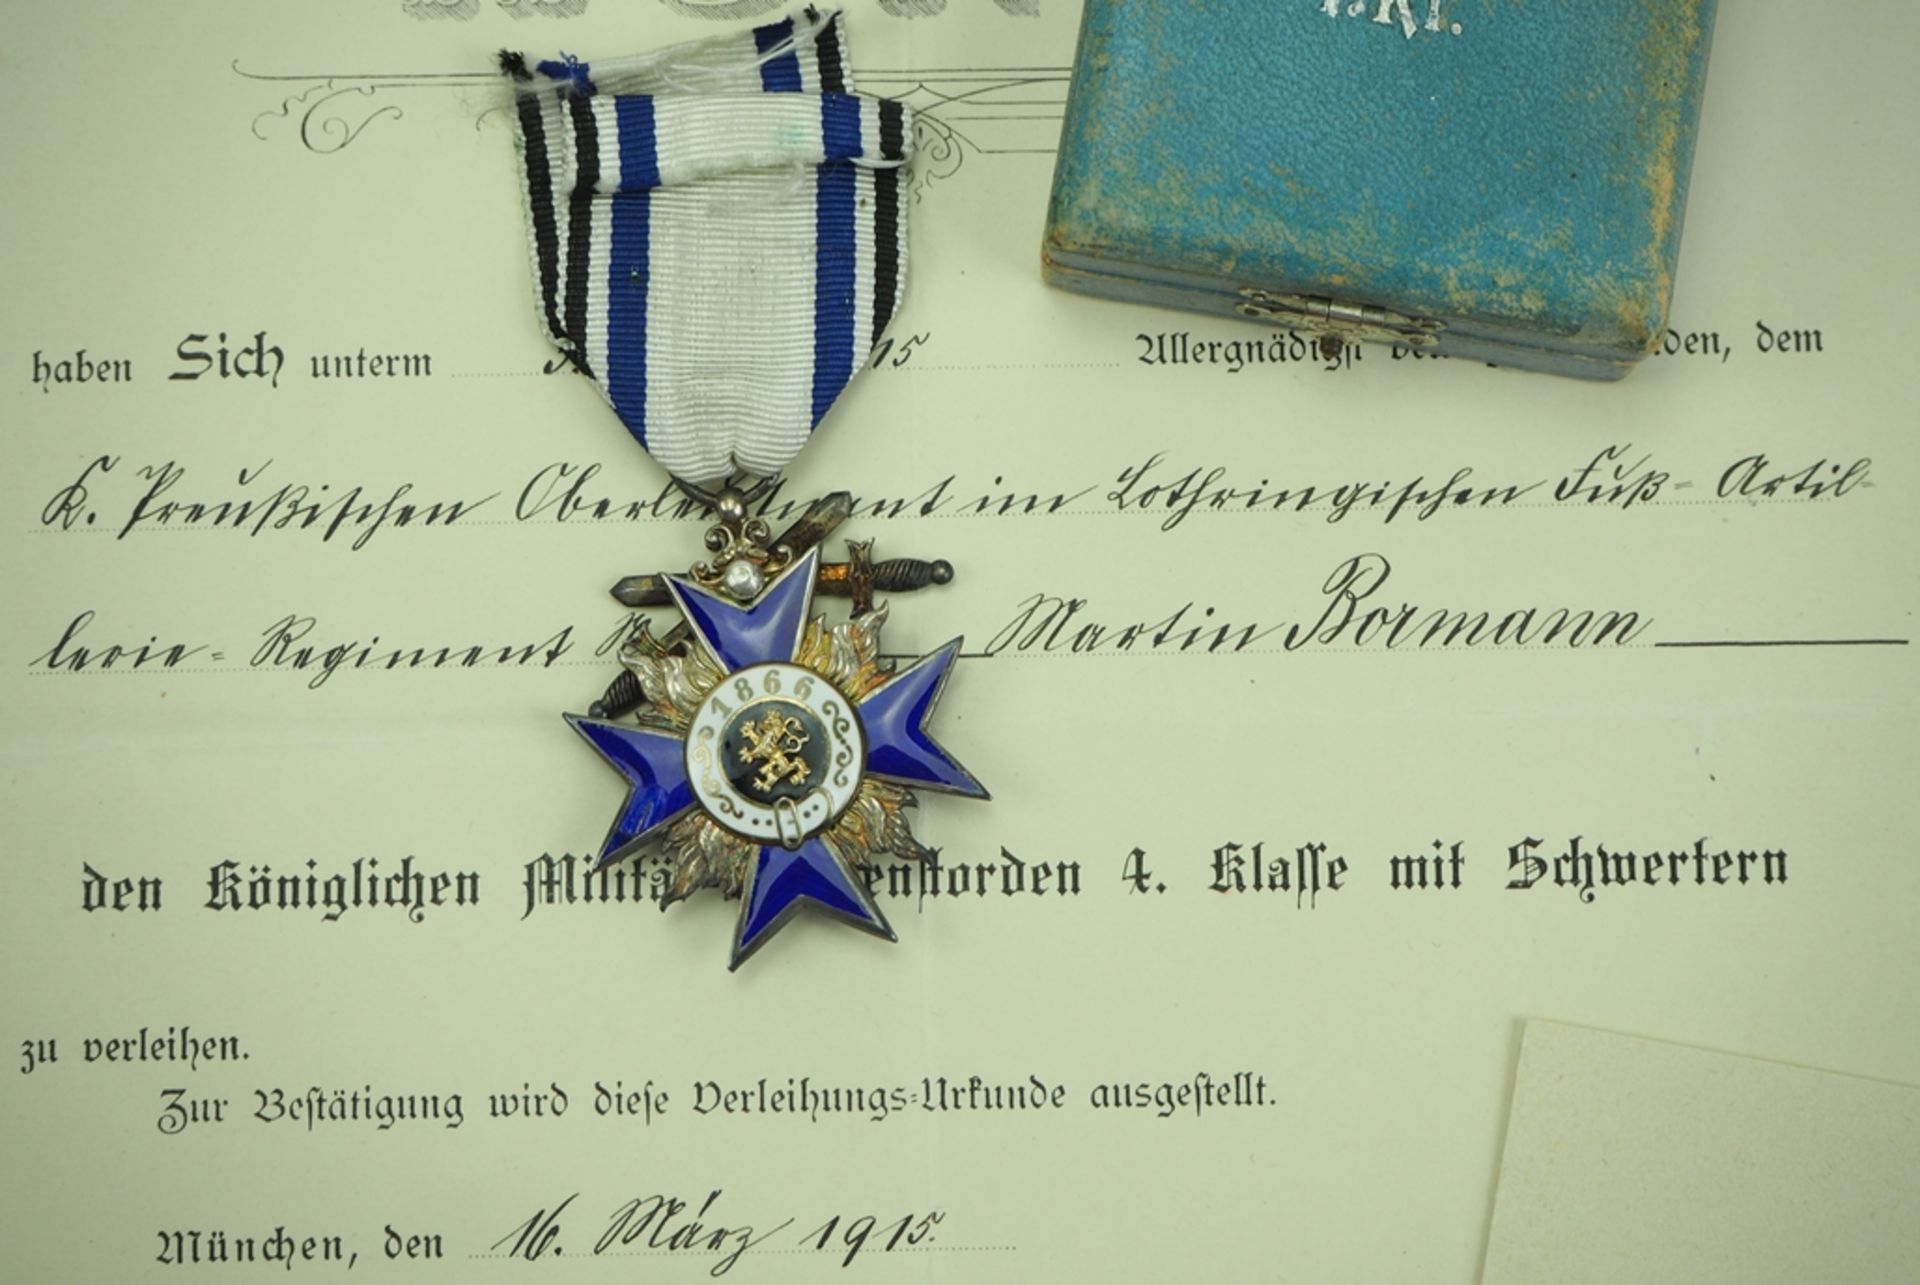 Bayern: Militär-Verdienst-Orden, 4. Klasse mit Schwertern, im Etui und Urkunde für einen Armee-Beob - Image 2 of 3